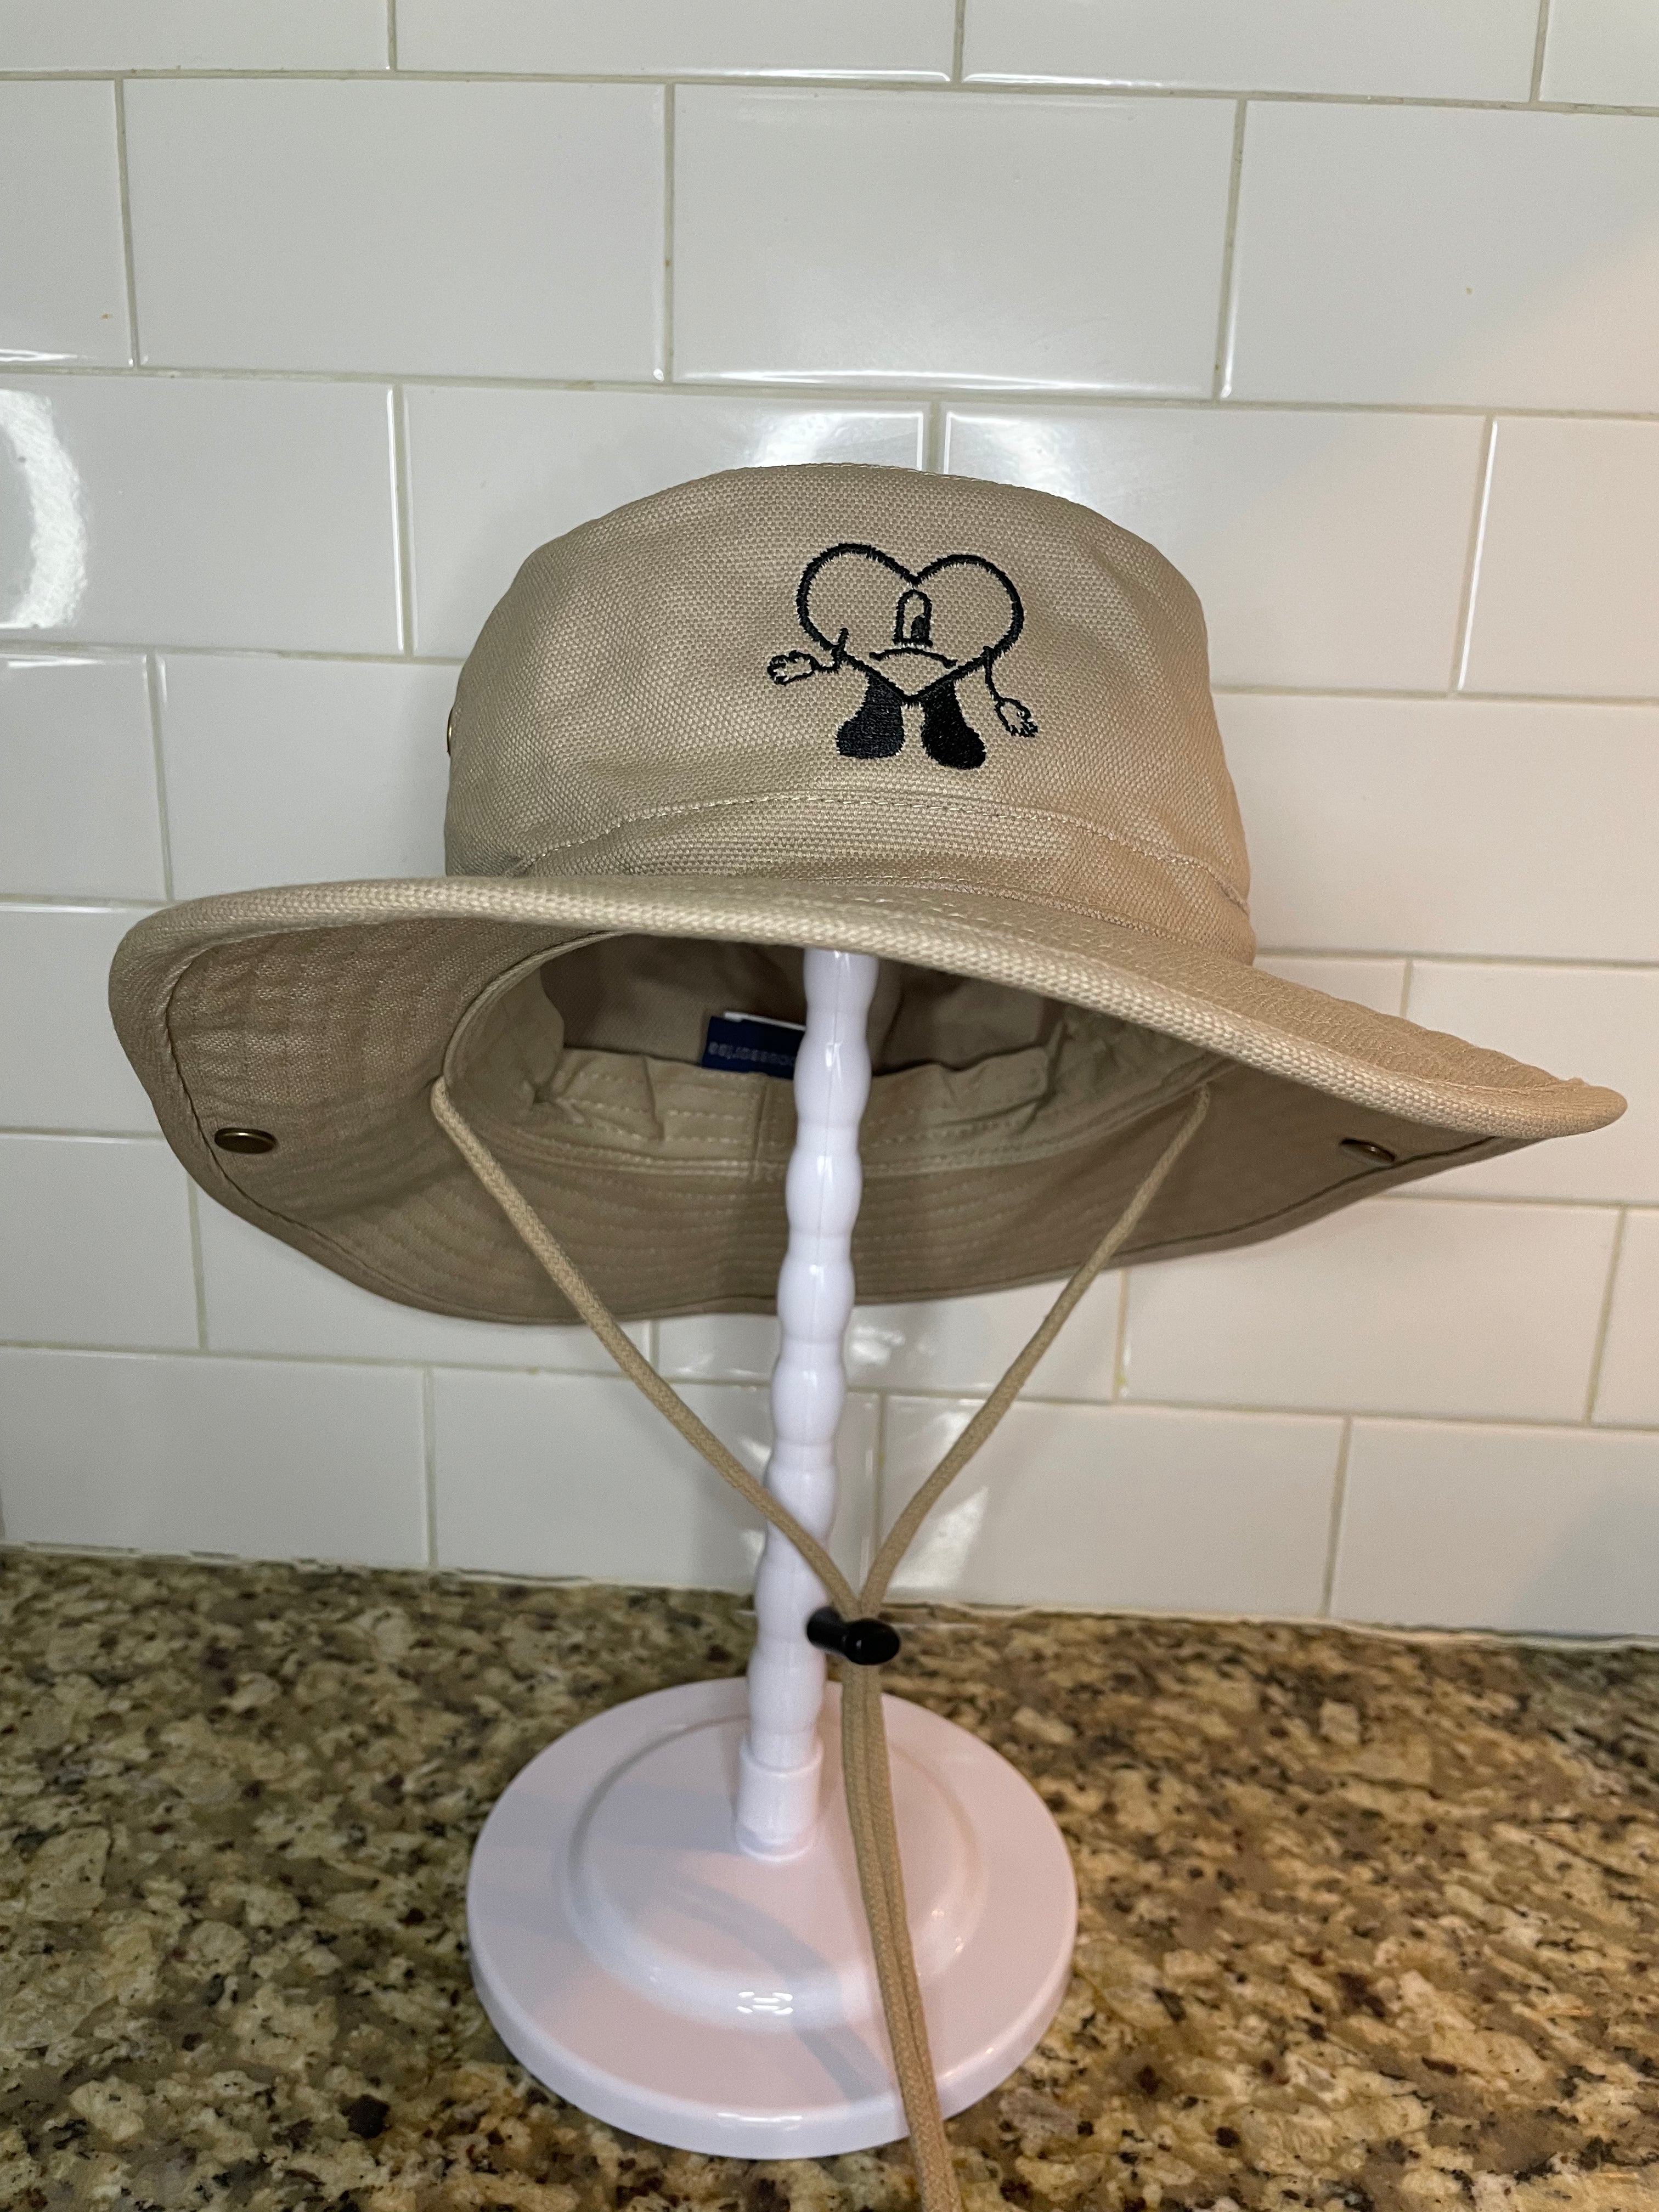 Bad Bunny Pokémon Hat By Slumpykev 7 5/8 for Sale in Lucas, TX - OfferUp